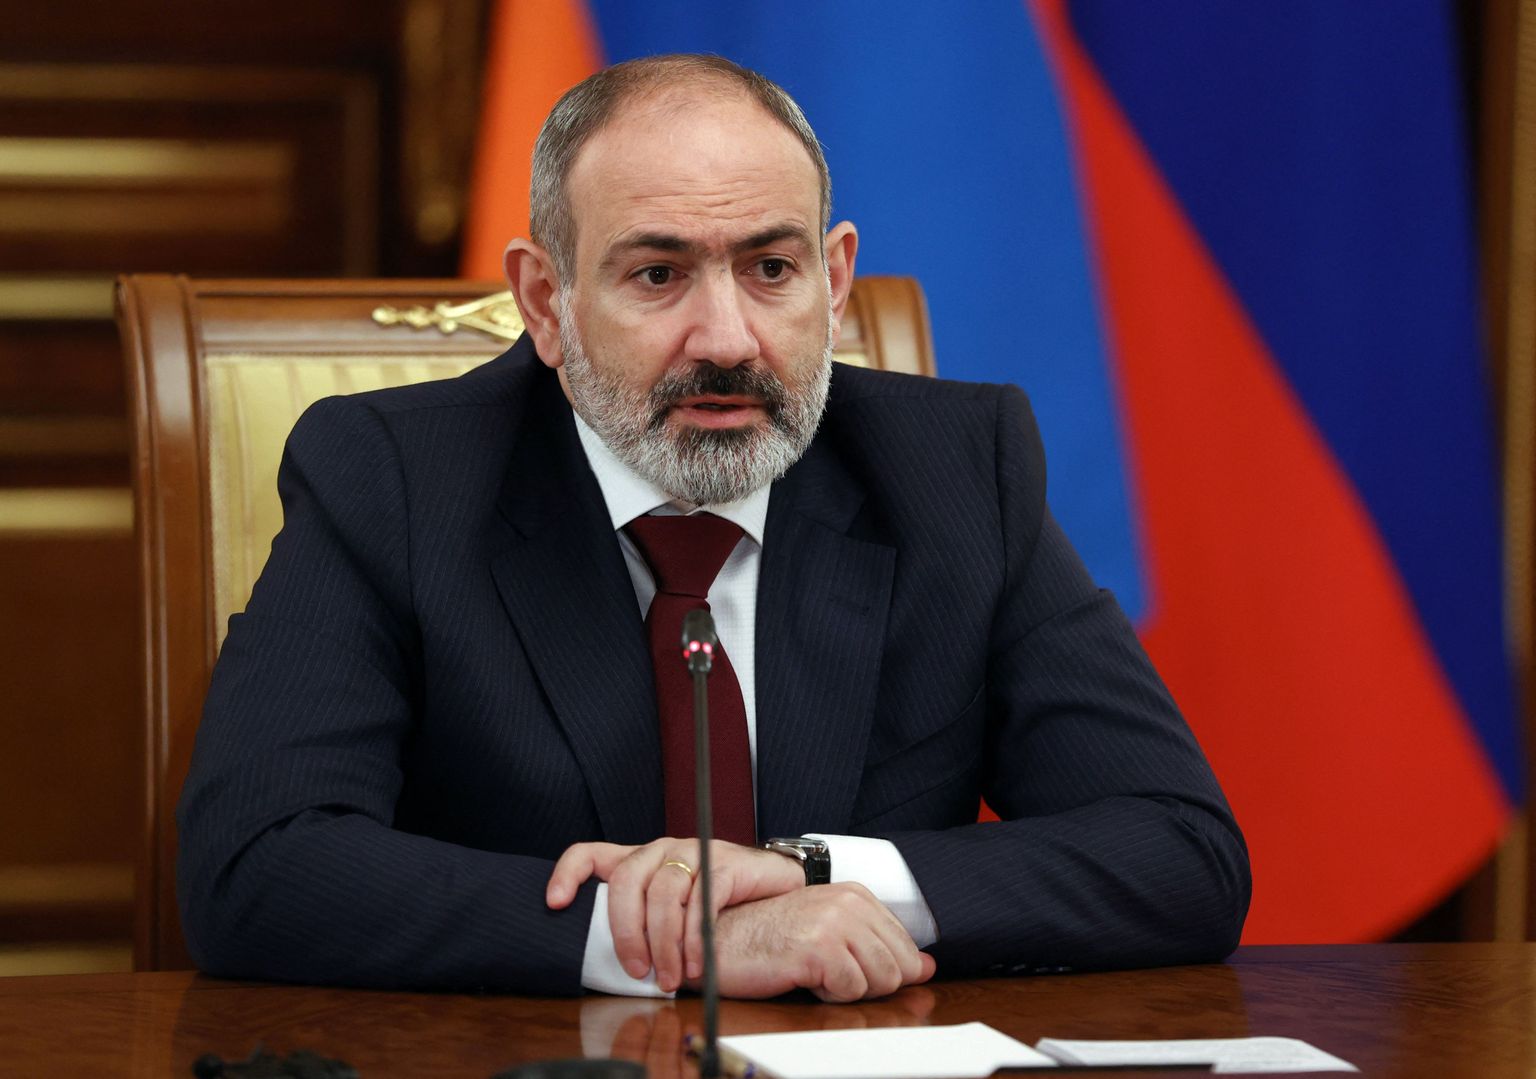 Премьер-министр Армении Никол Пашинян.